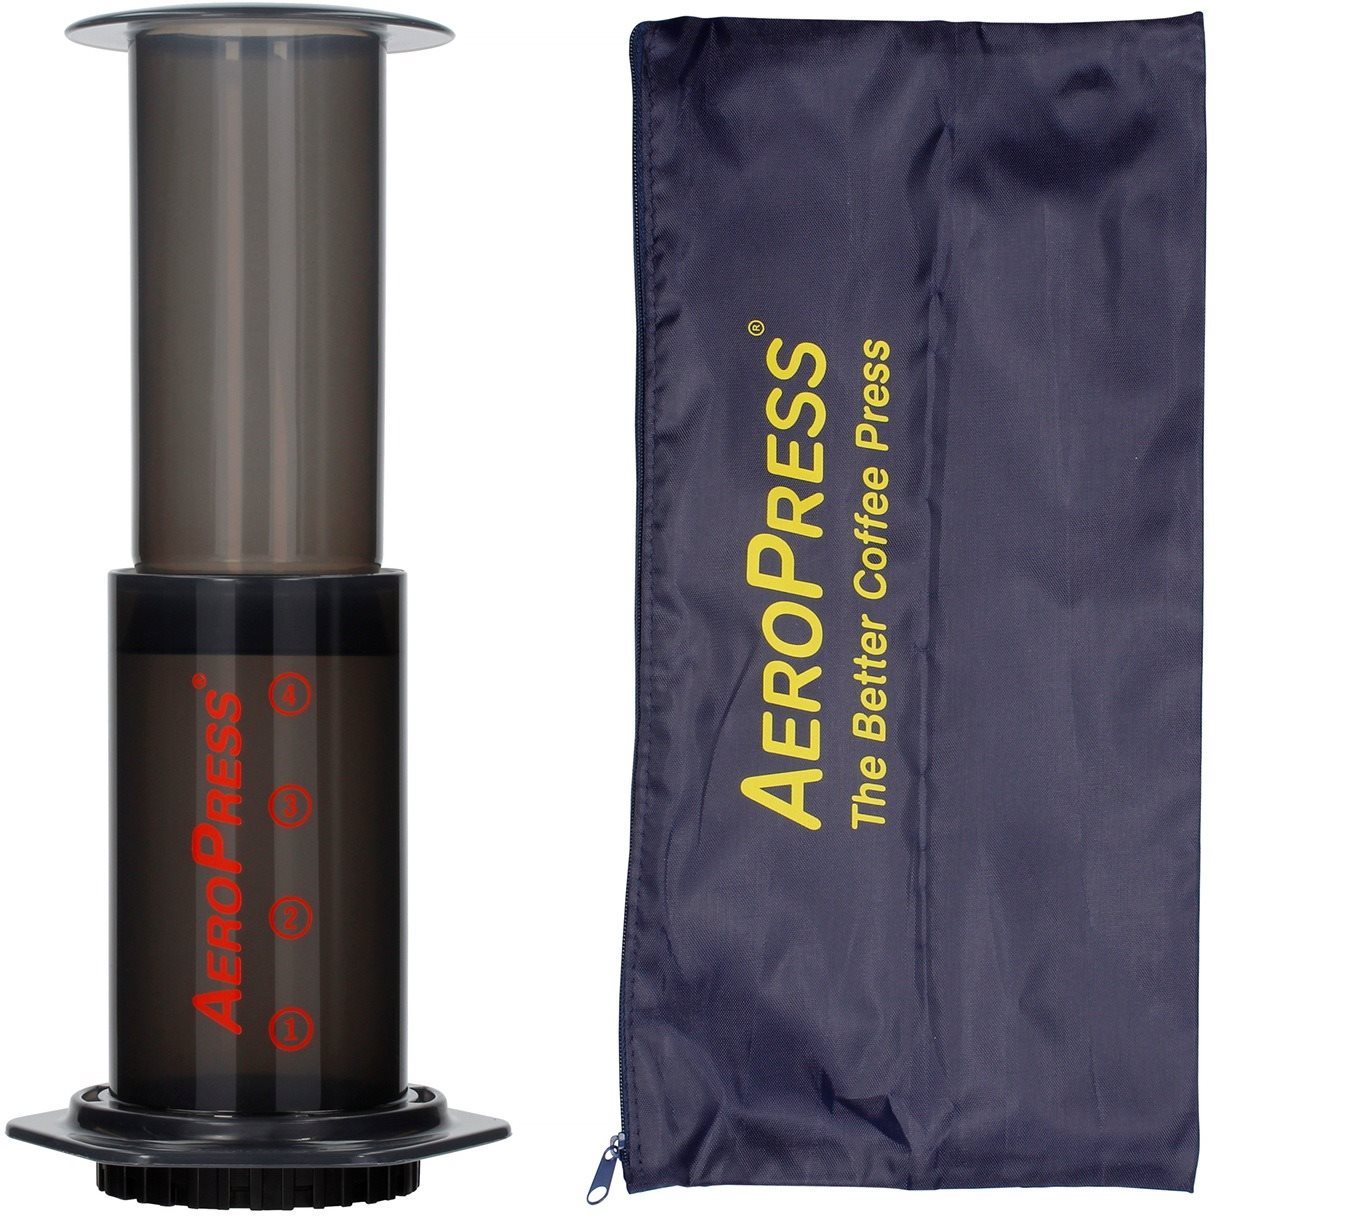 Kézi kávéfőző AeroPress Aerobie kézi kávéfőző, 350 filter a csomagban